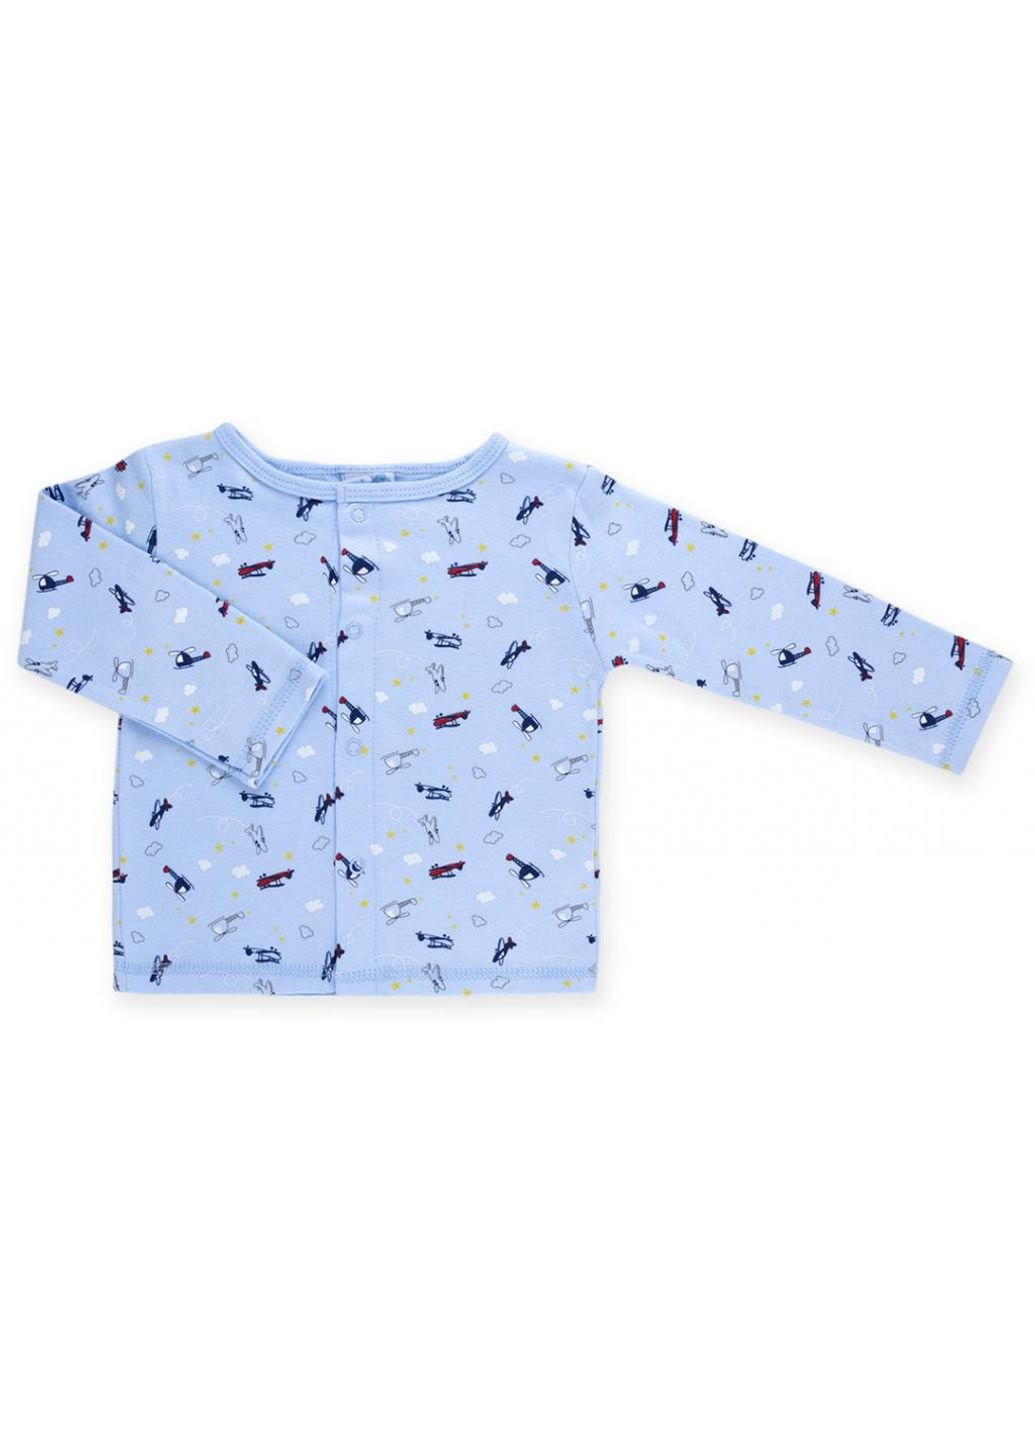 Блакитний демісезонний набір дитячого одягу для хлопчиків: чоловічок, штанці, кофточка та шапочка (f7763.b.9-12) Luvena Fortuna